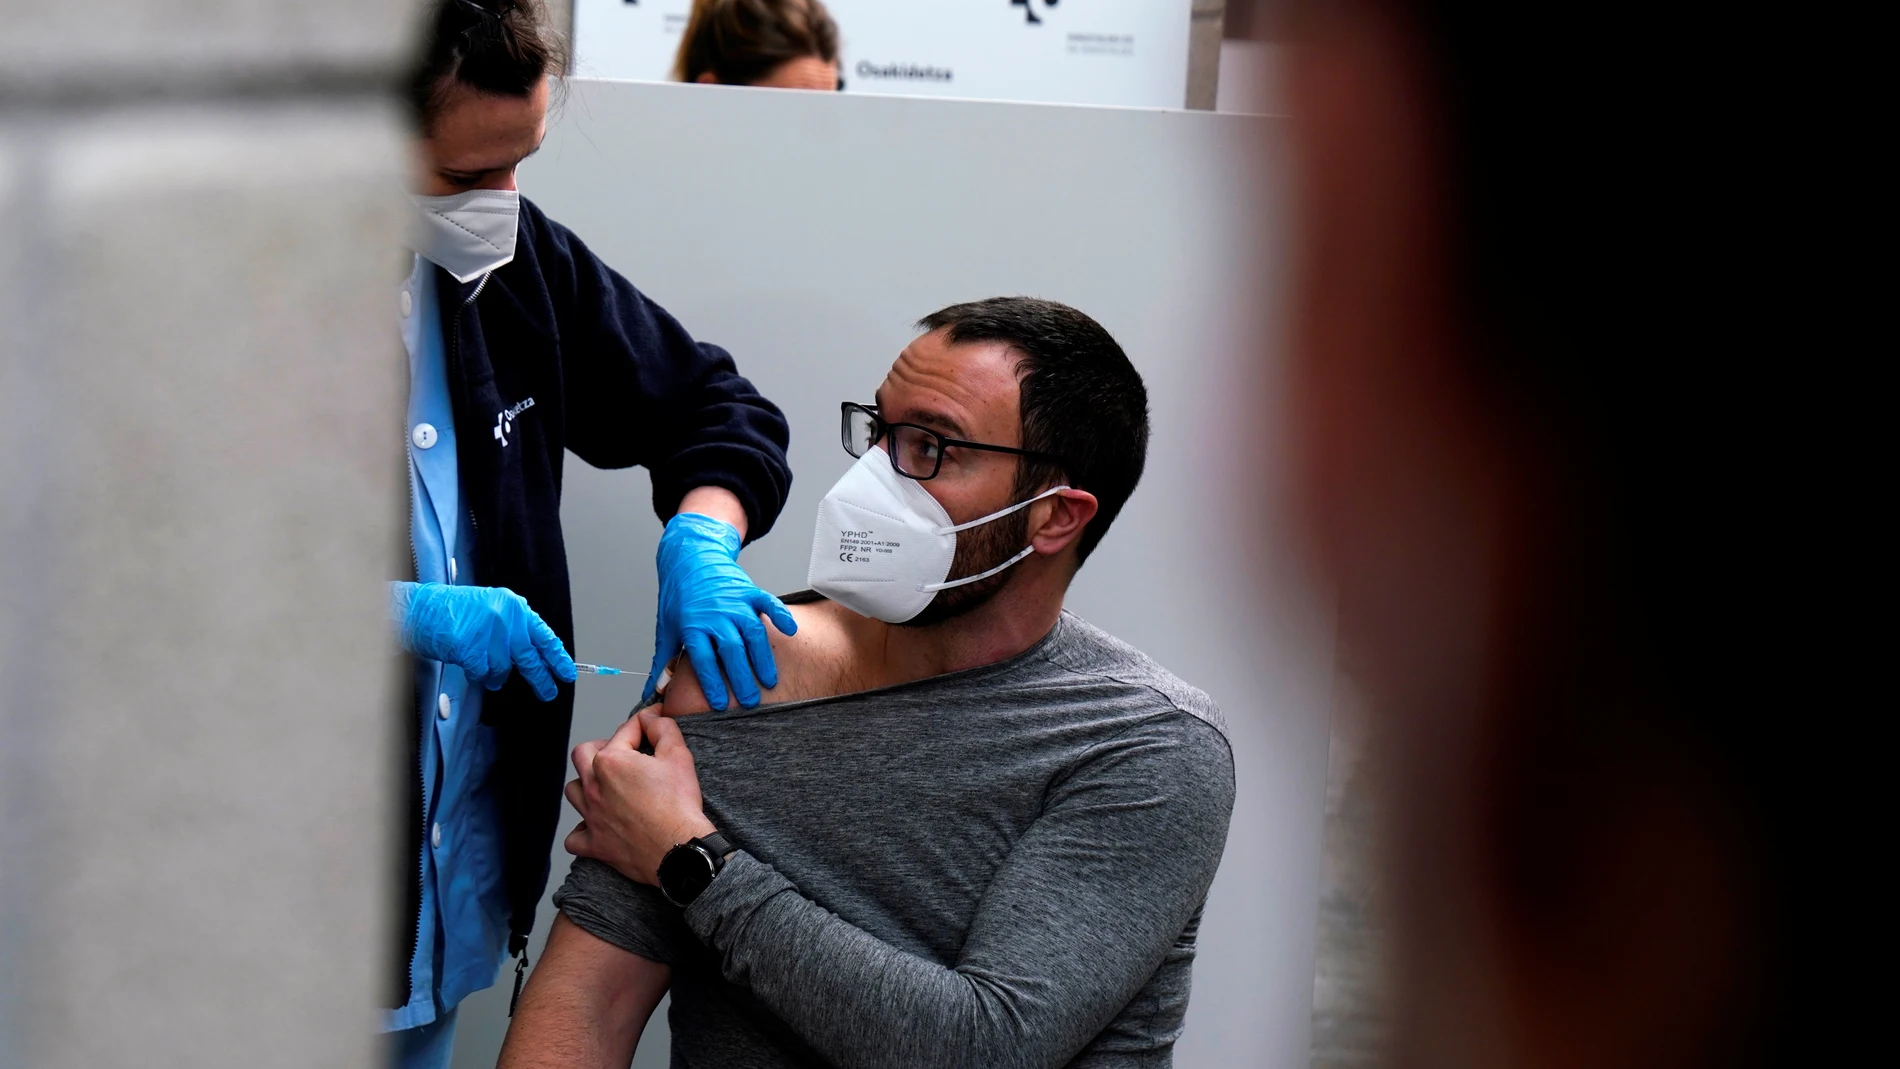 laSexta Noticias 14:00 (12-04-21) España tendrá más personas vacunadas contra el COVID-19 que contagiadas esta semana